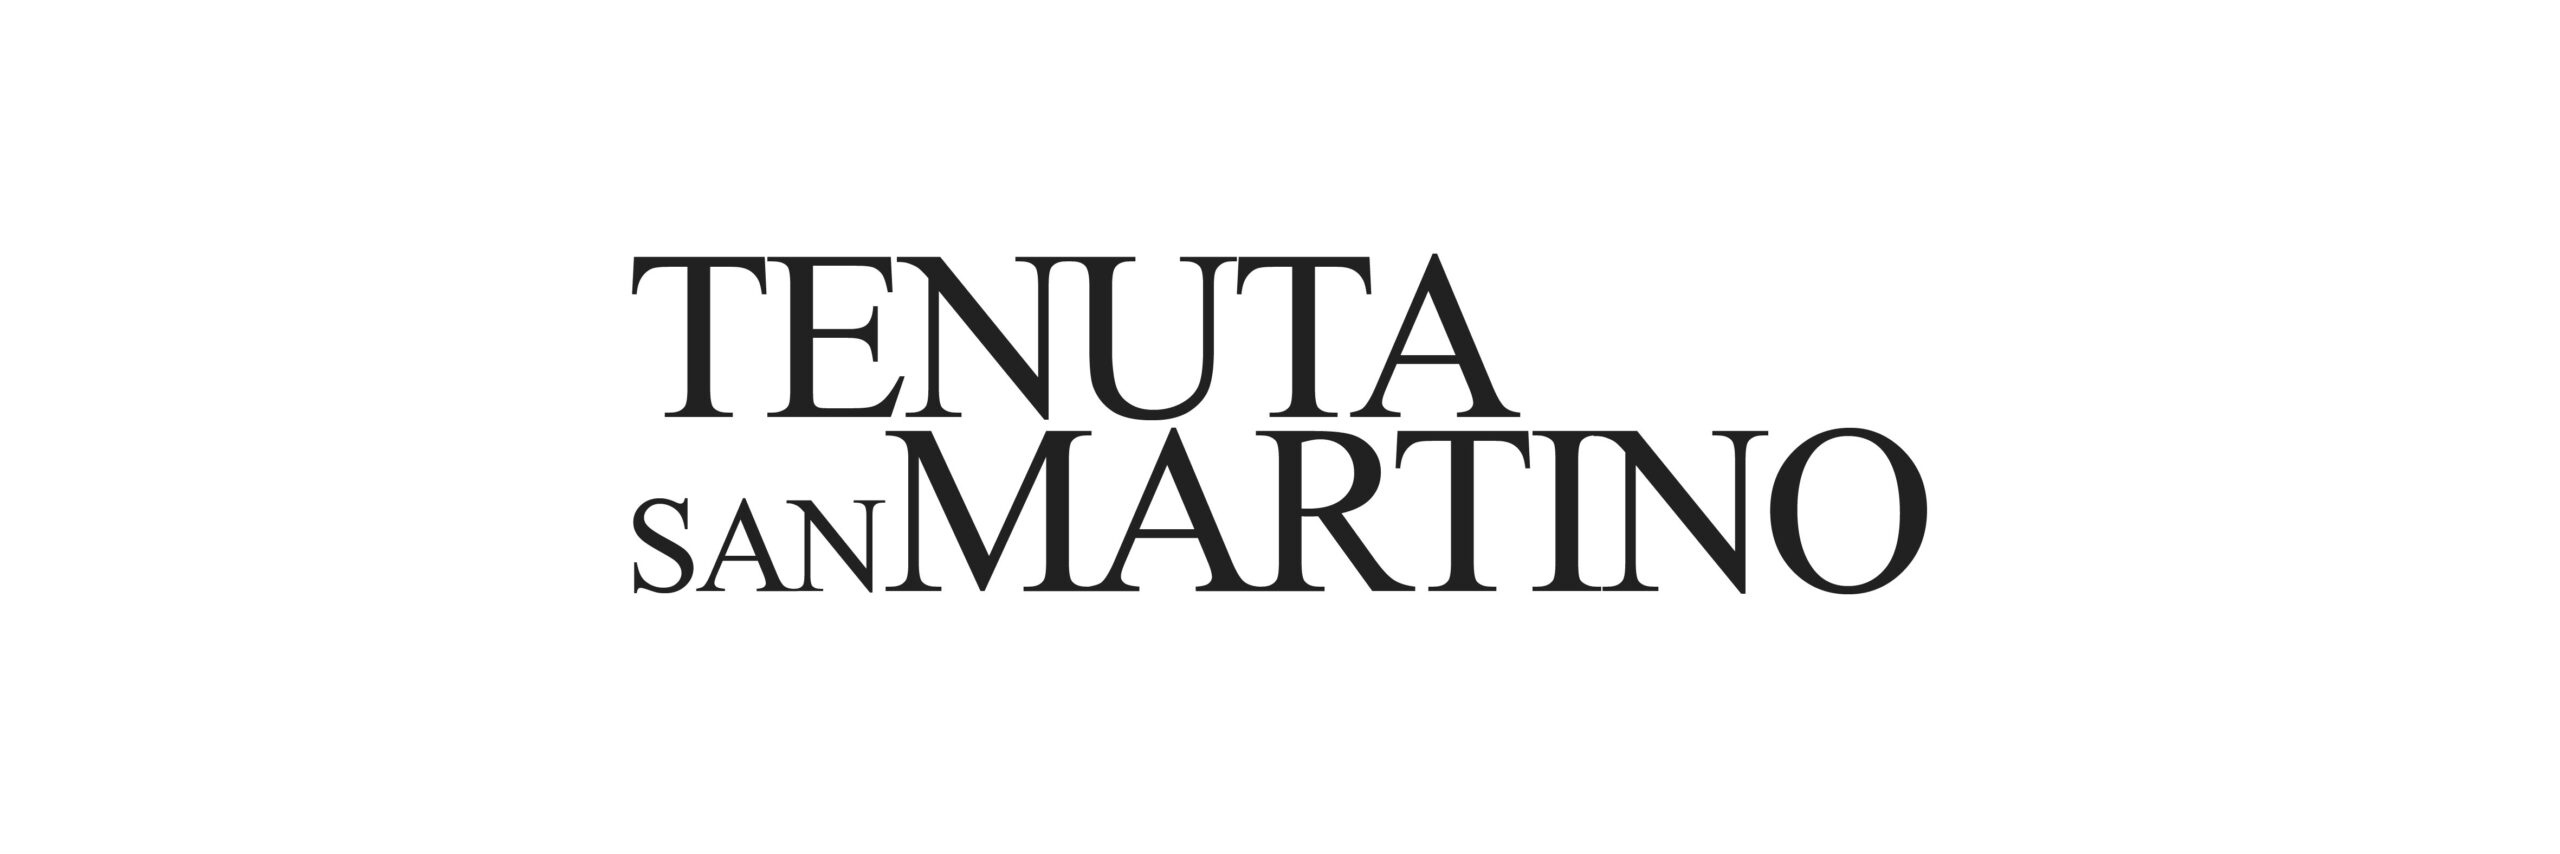 Verdicchio, Rosso Piceno, Visciola offerta cantina Tenuta San Martino